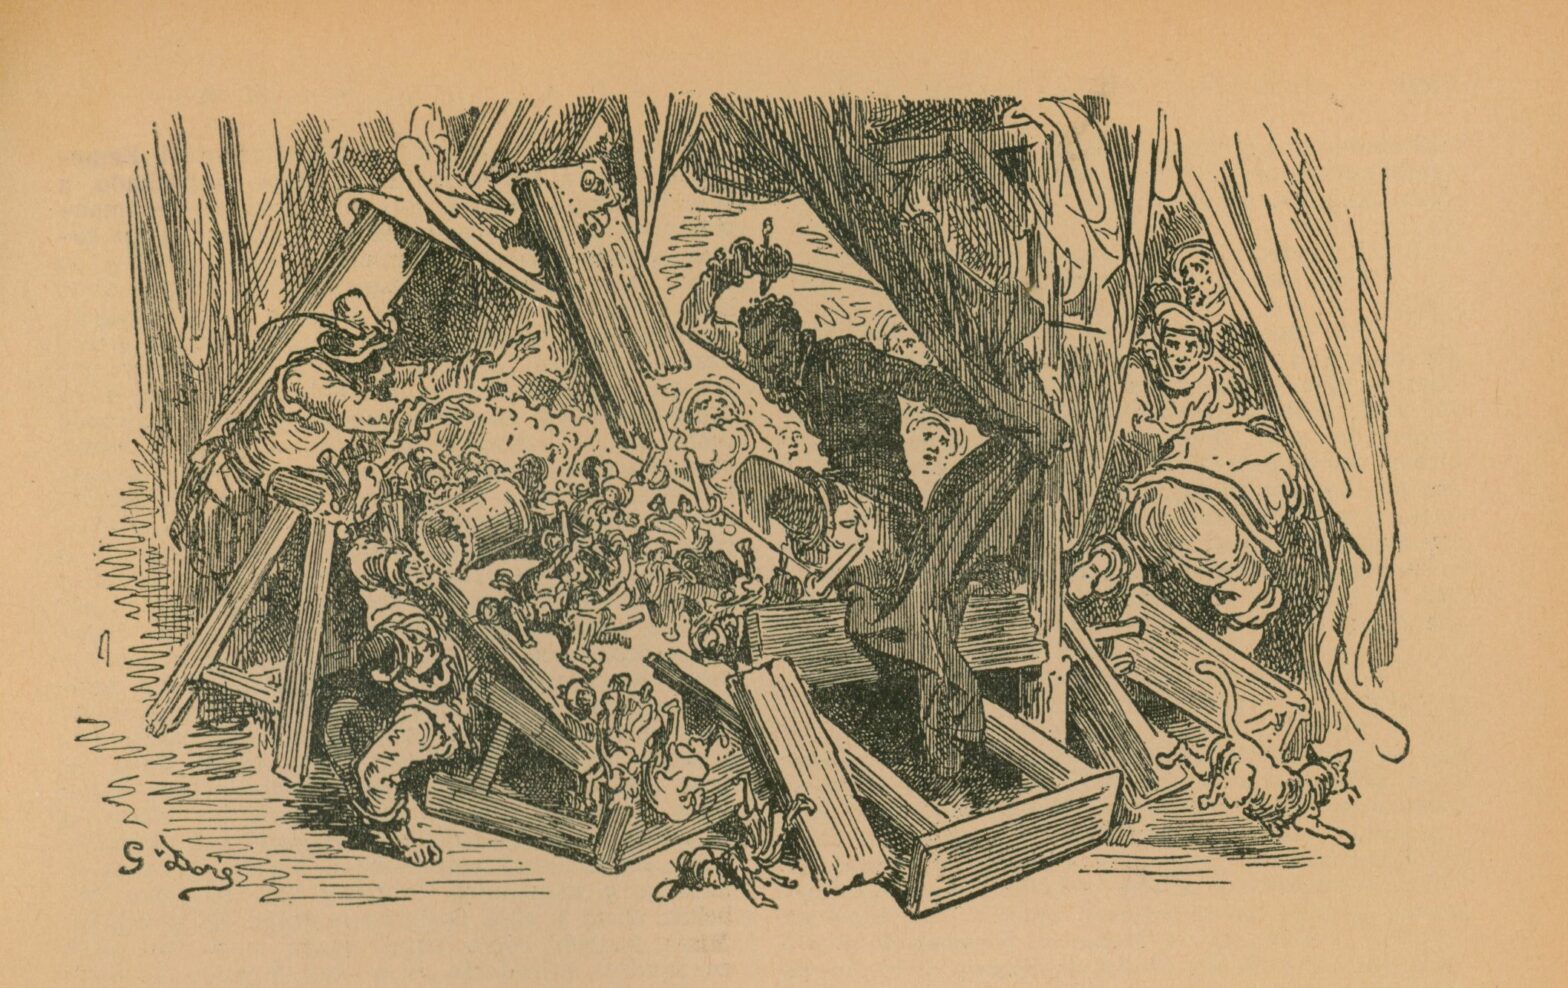 Ilustración de Gustavo Doré para el capítulo de El retablo de maese Pedro, en uno de las ediciones del Quijote conservadas en la biblioteca de Manuel de Falla.